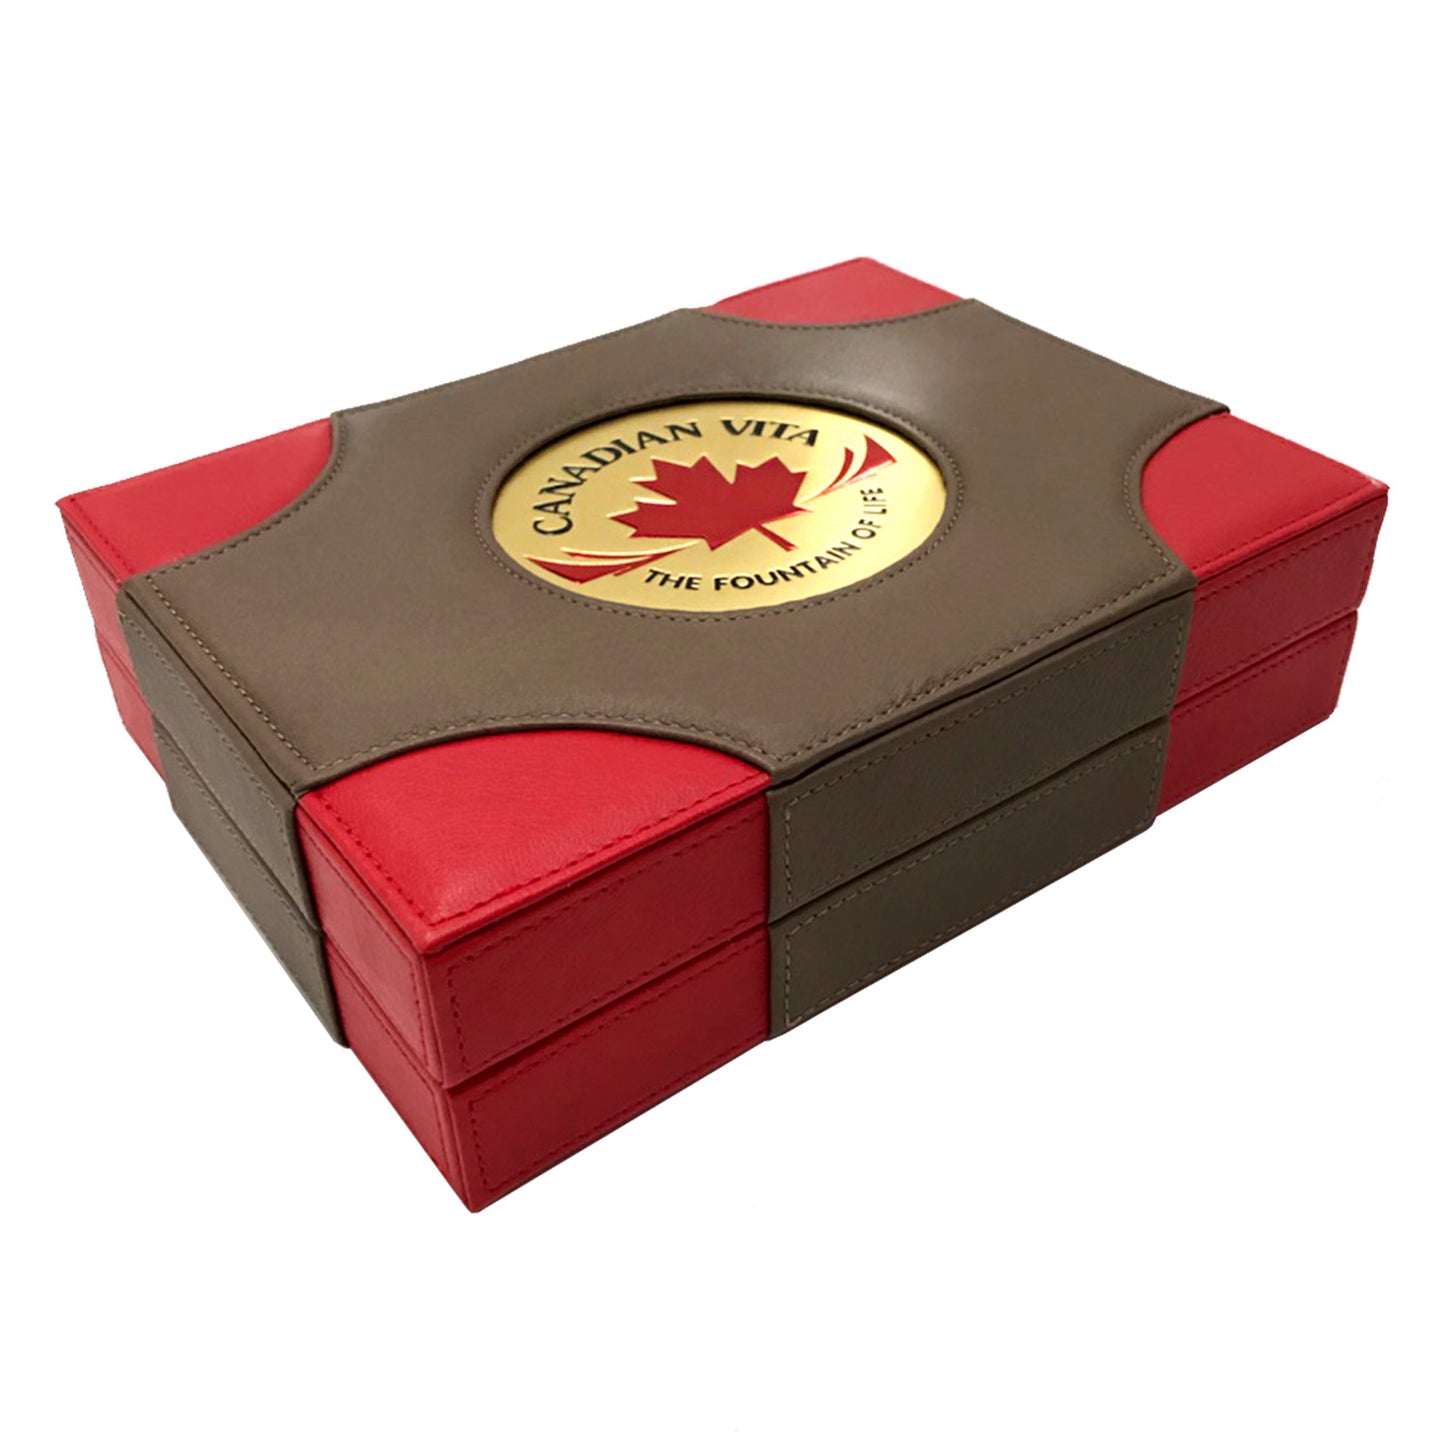 Canadian Vita Royal Ginseng Box (5 year - 250g)